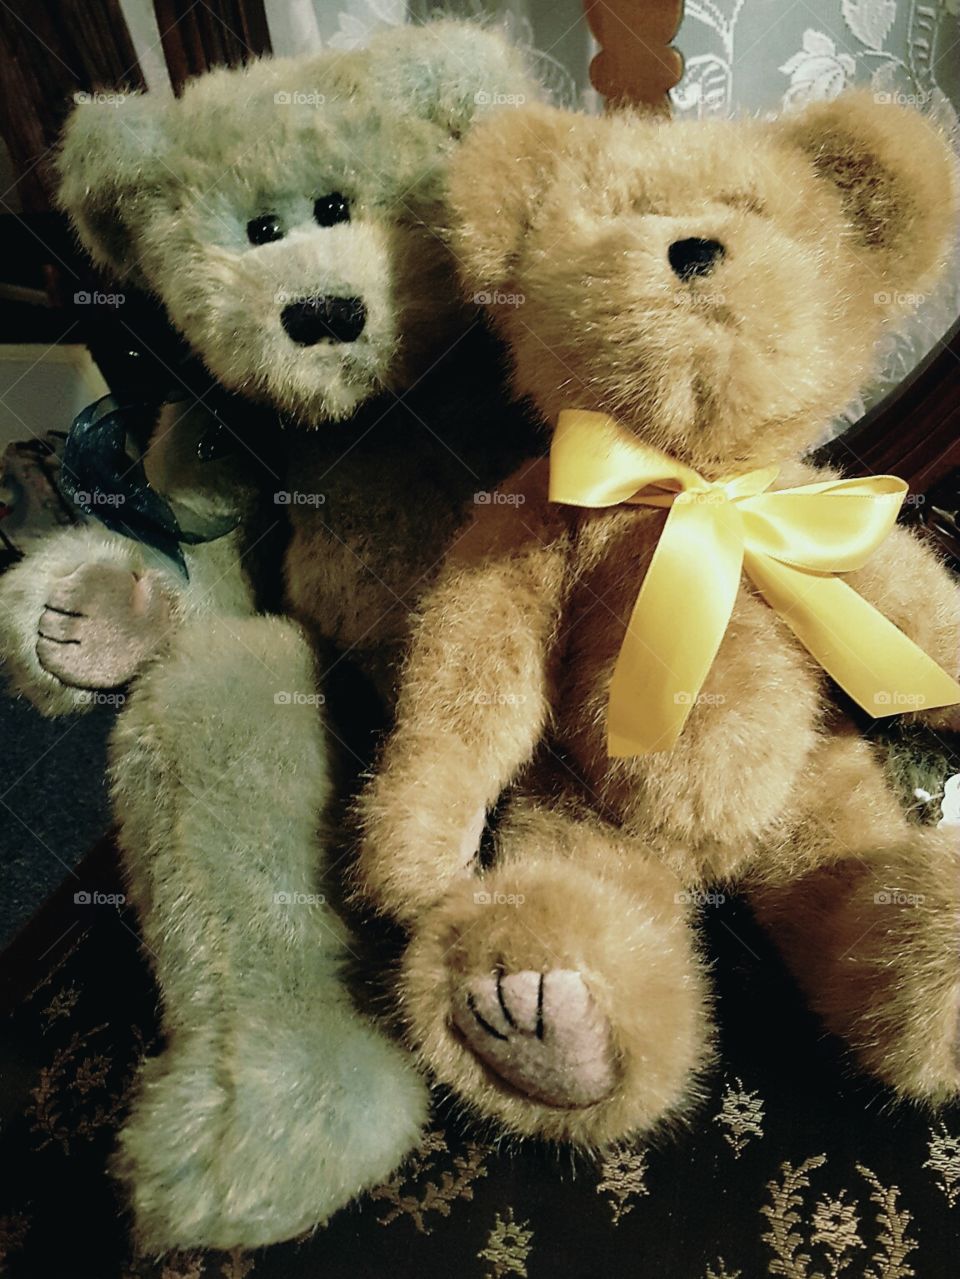 teddy bears